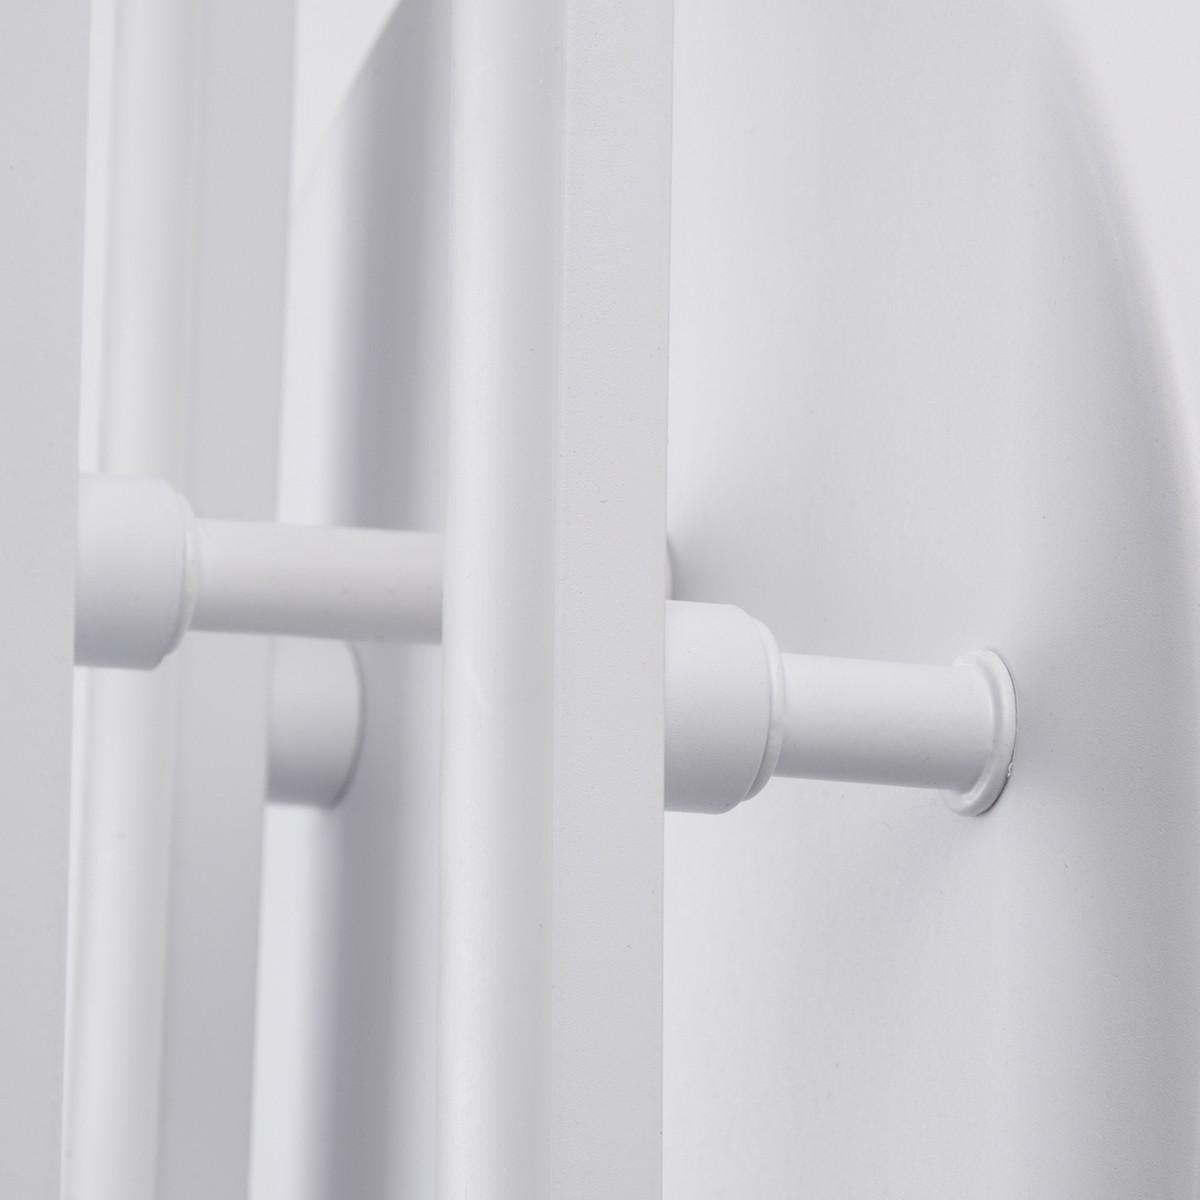 LED Φωτιστικό Οροφής Λευκό Γραμμικό Linear Design DRACO 45W με Εναλλαγή Φωτισμού Dimmable Φ50 x Υ11cm 61094